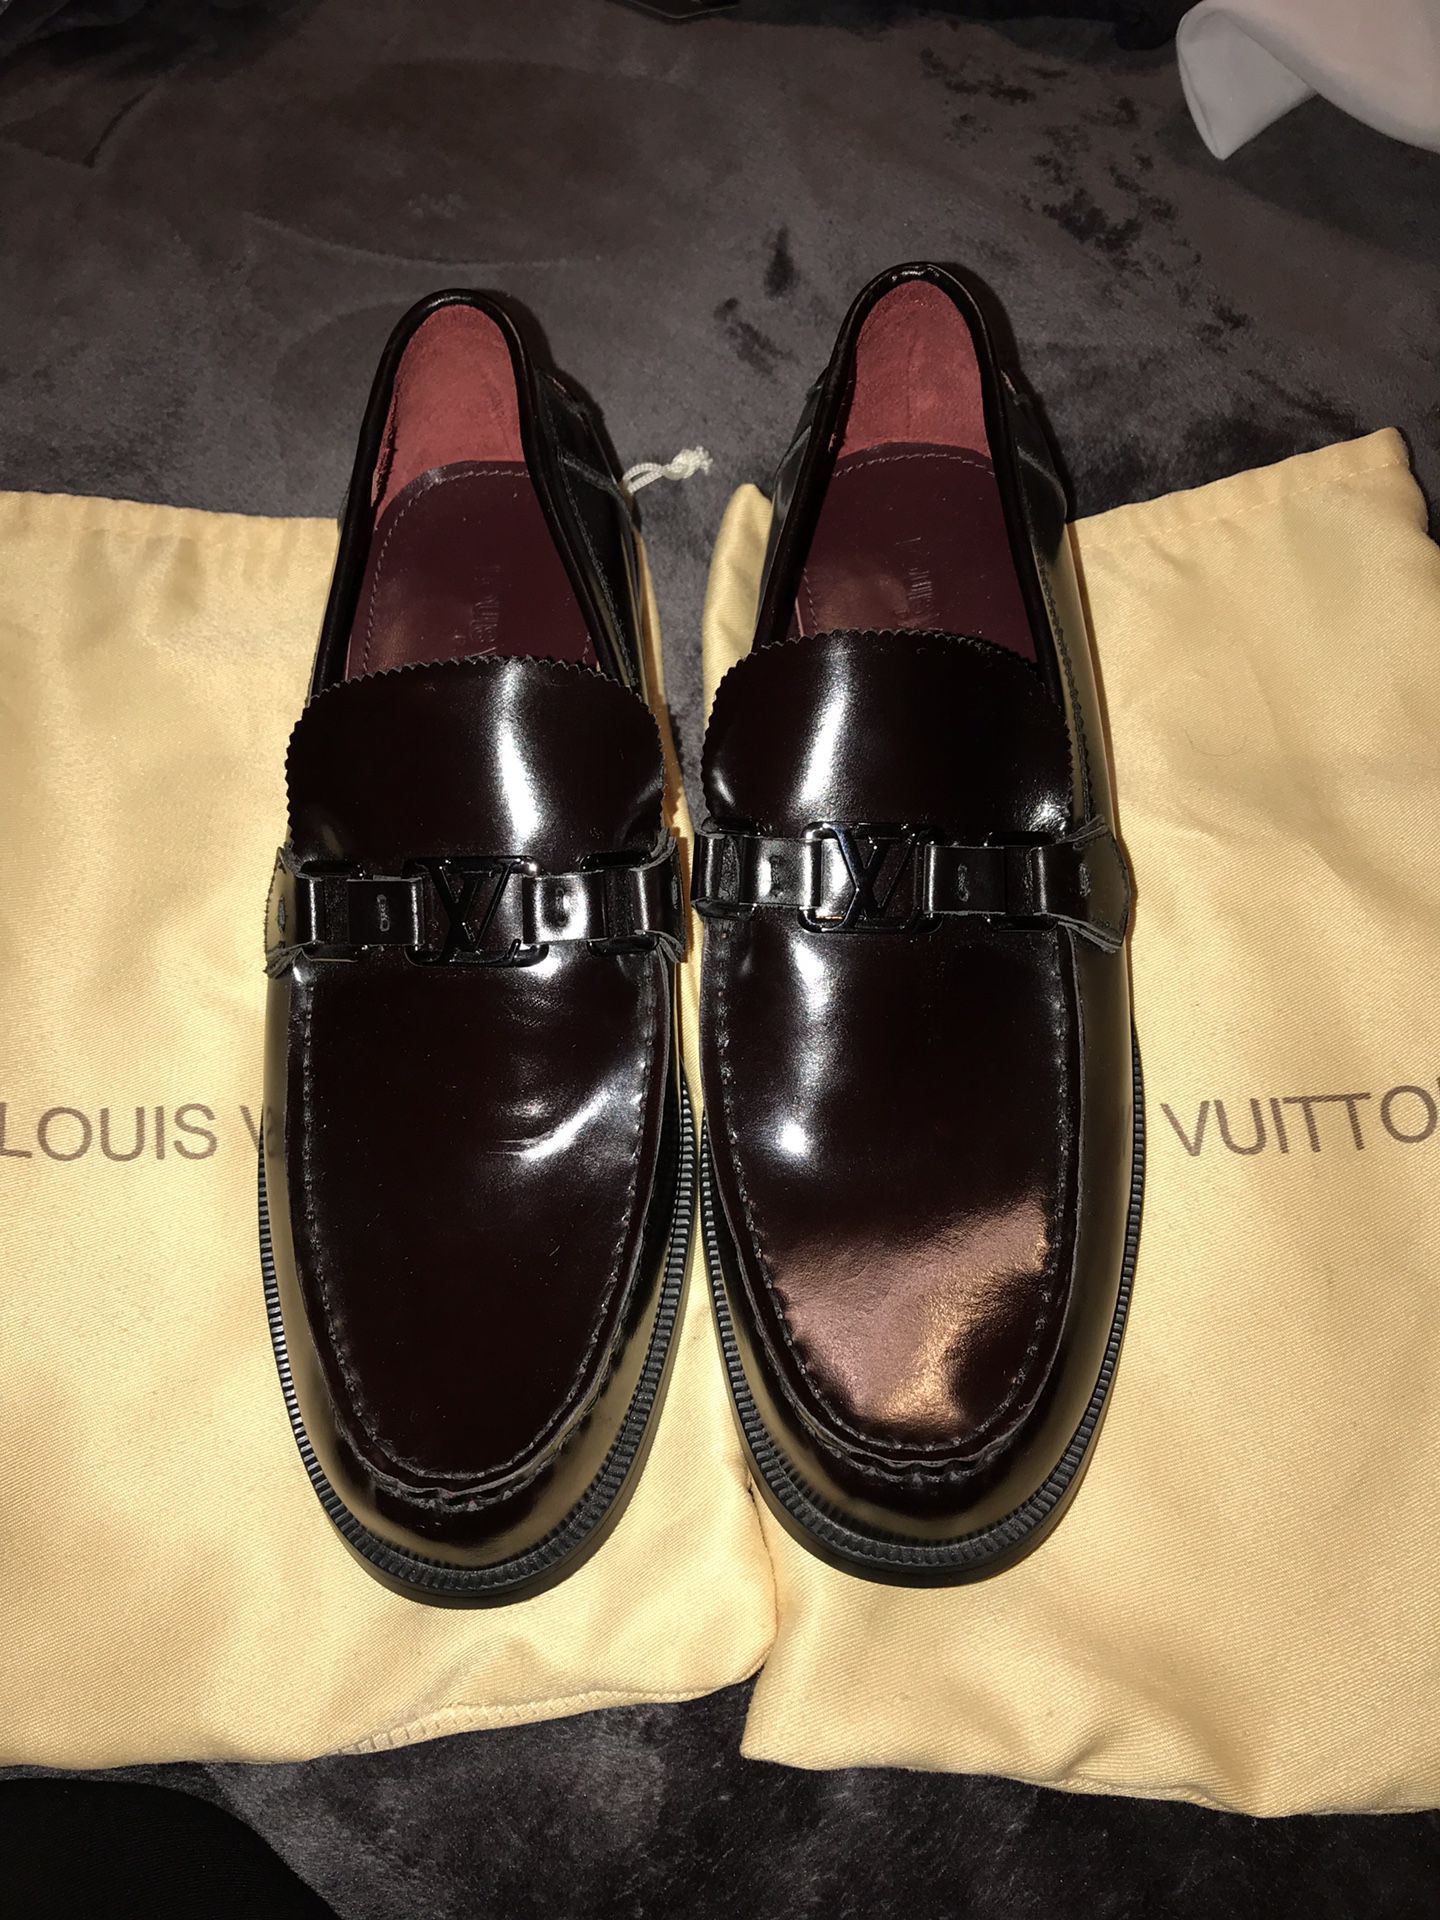 Louis Vuitton men’s shoes